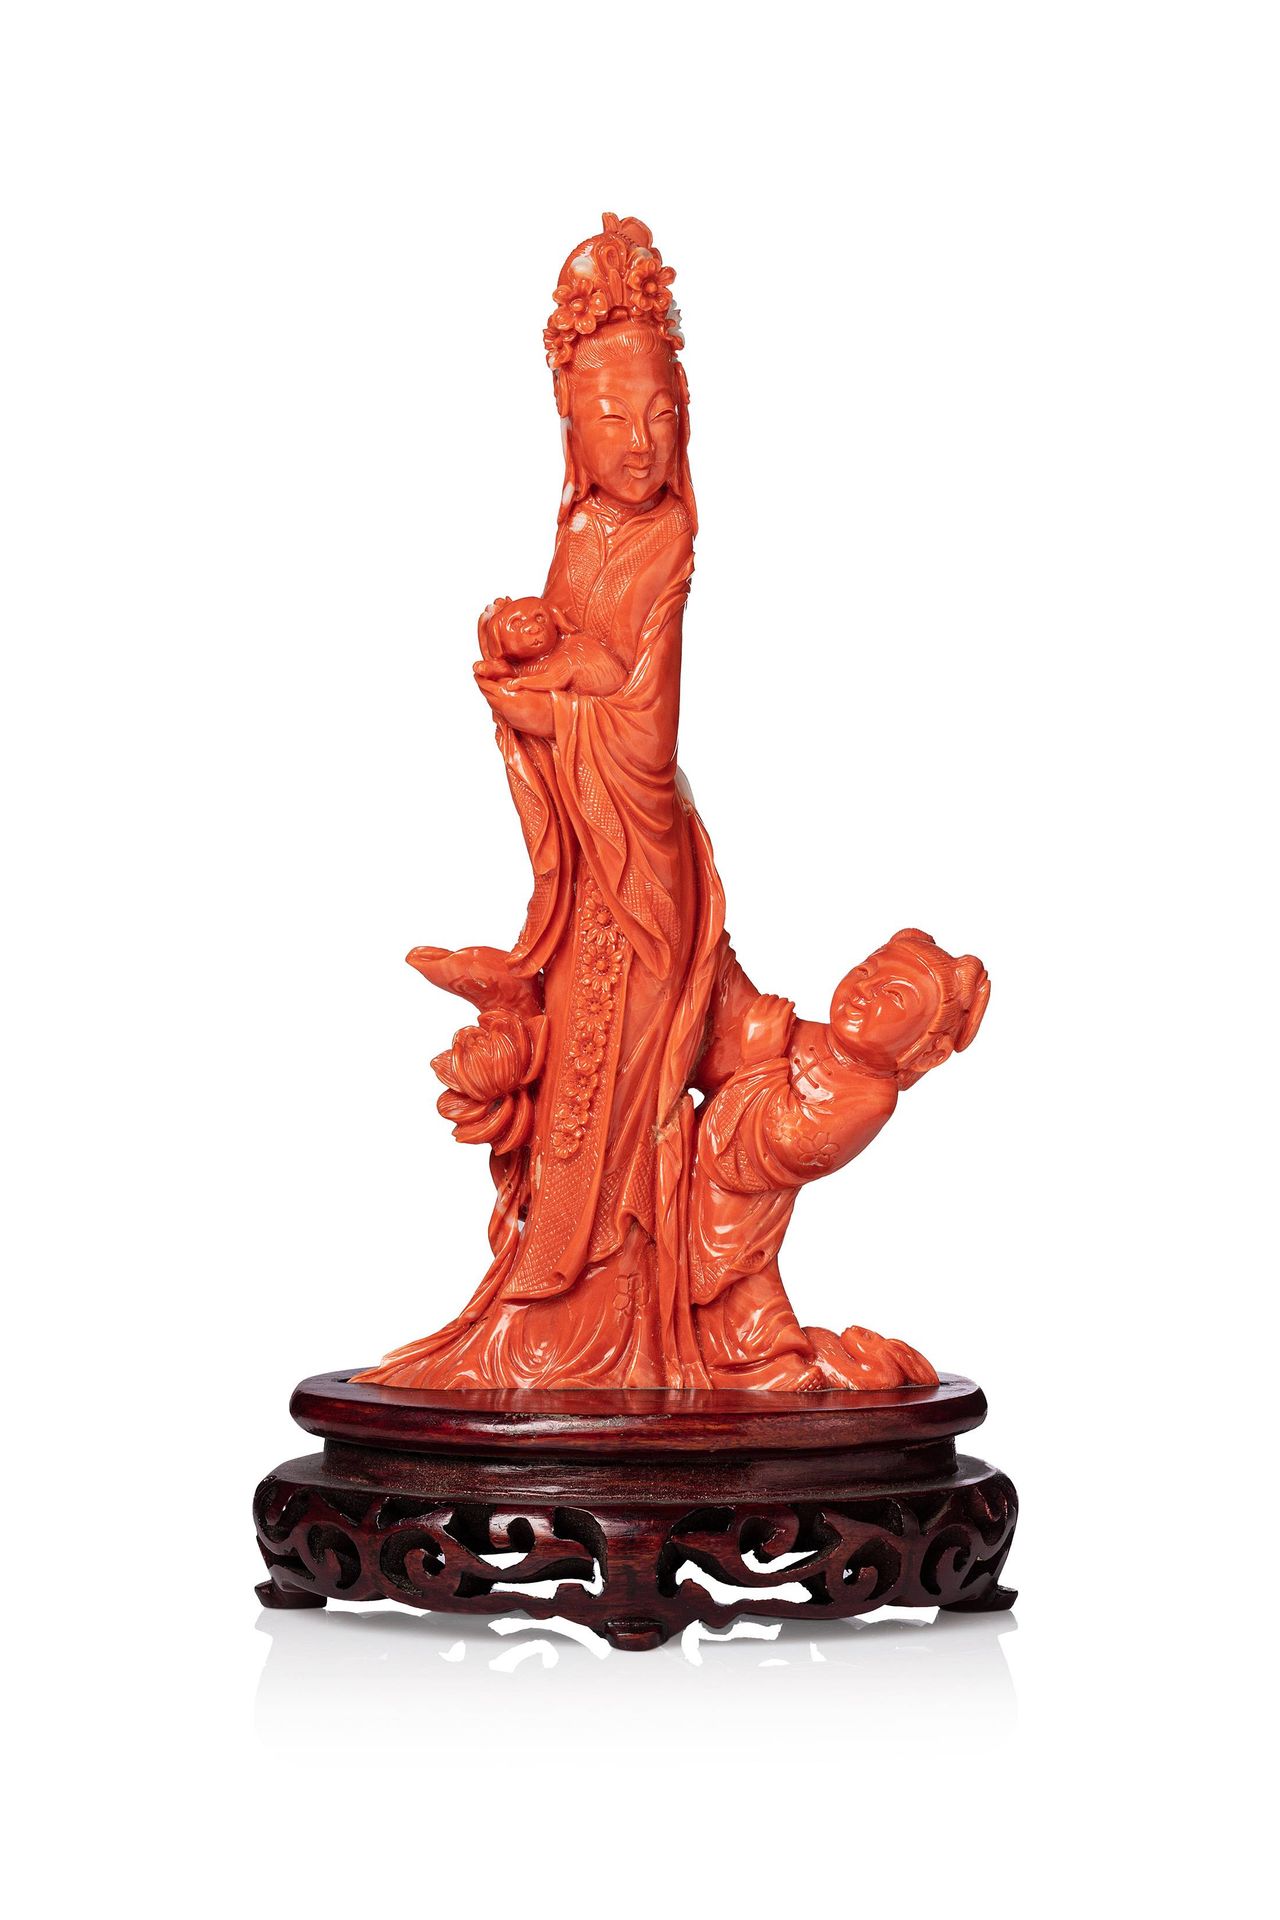 CHINE, XXe siècle 
Branche de corail* orange sculptée prenant la forme d'une élé&hellip;